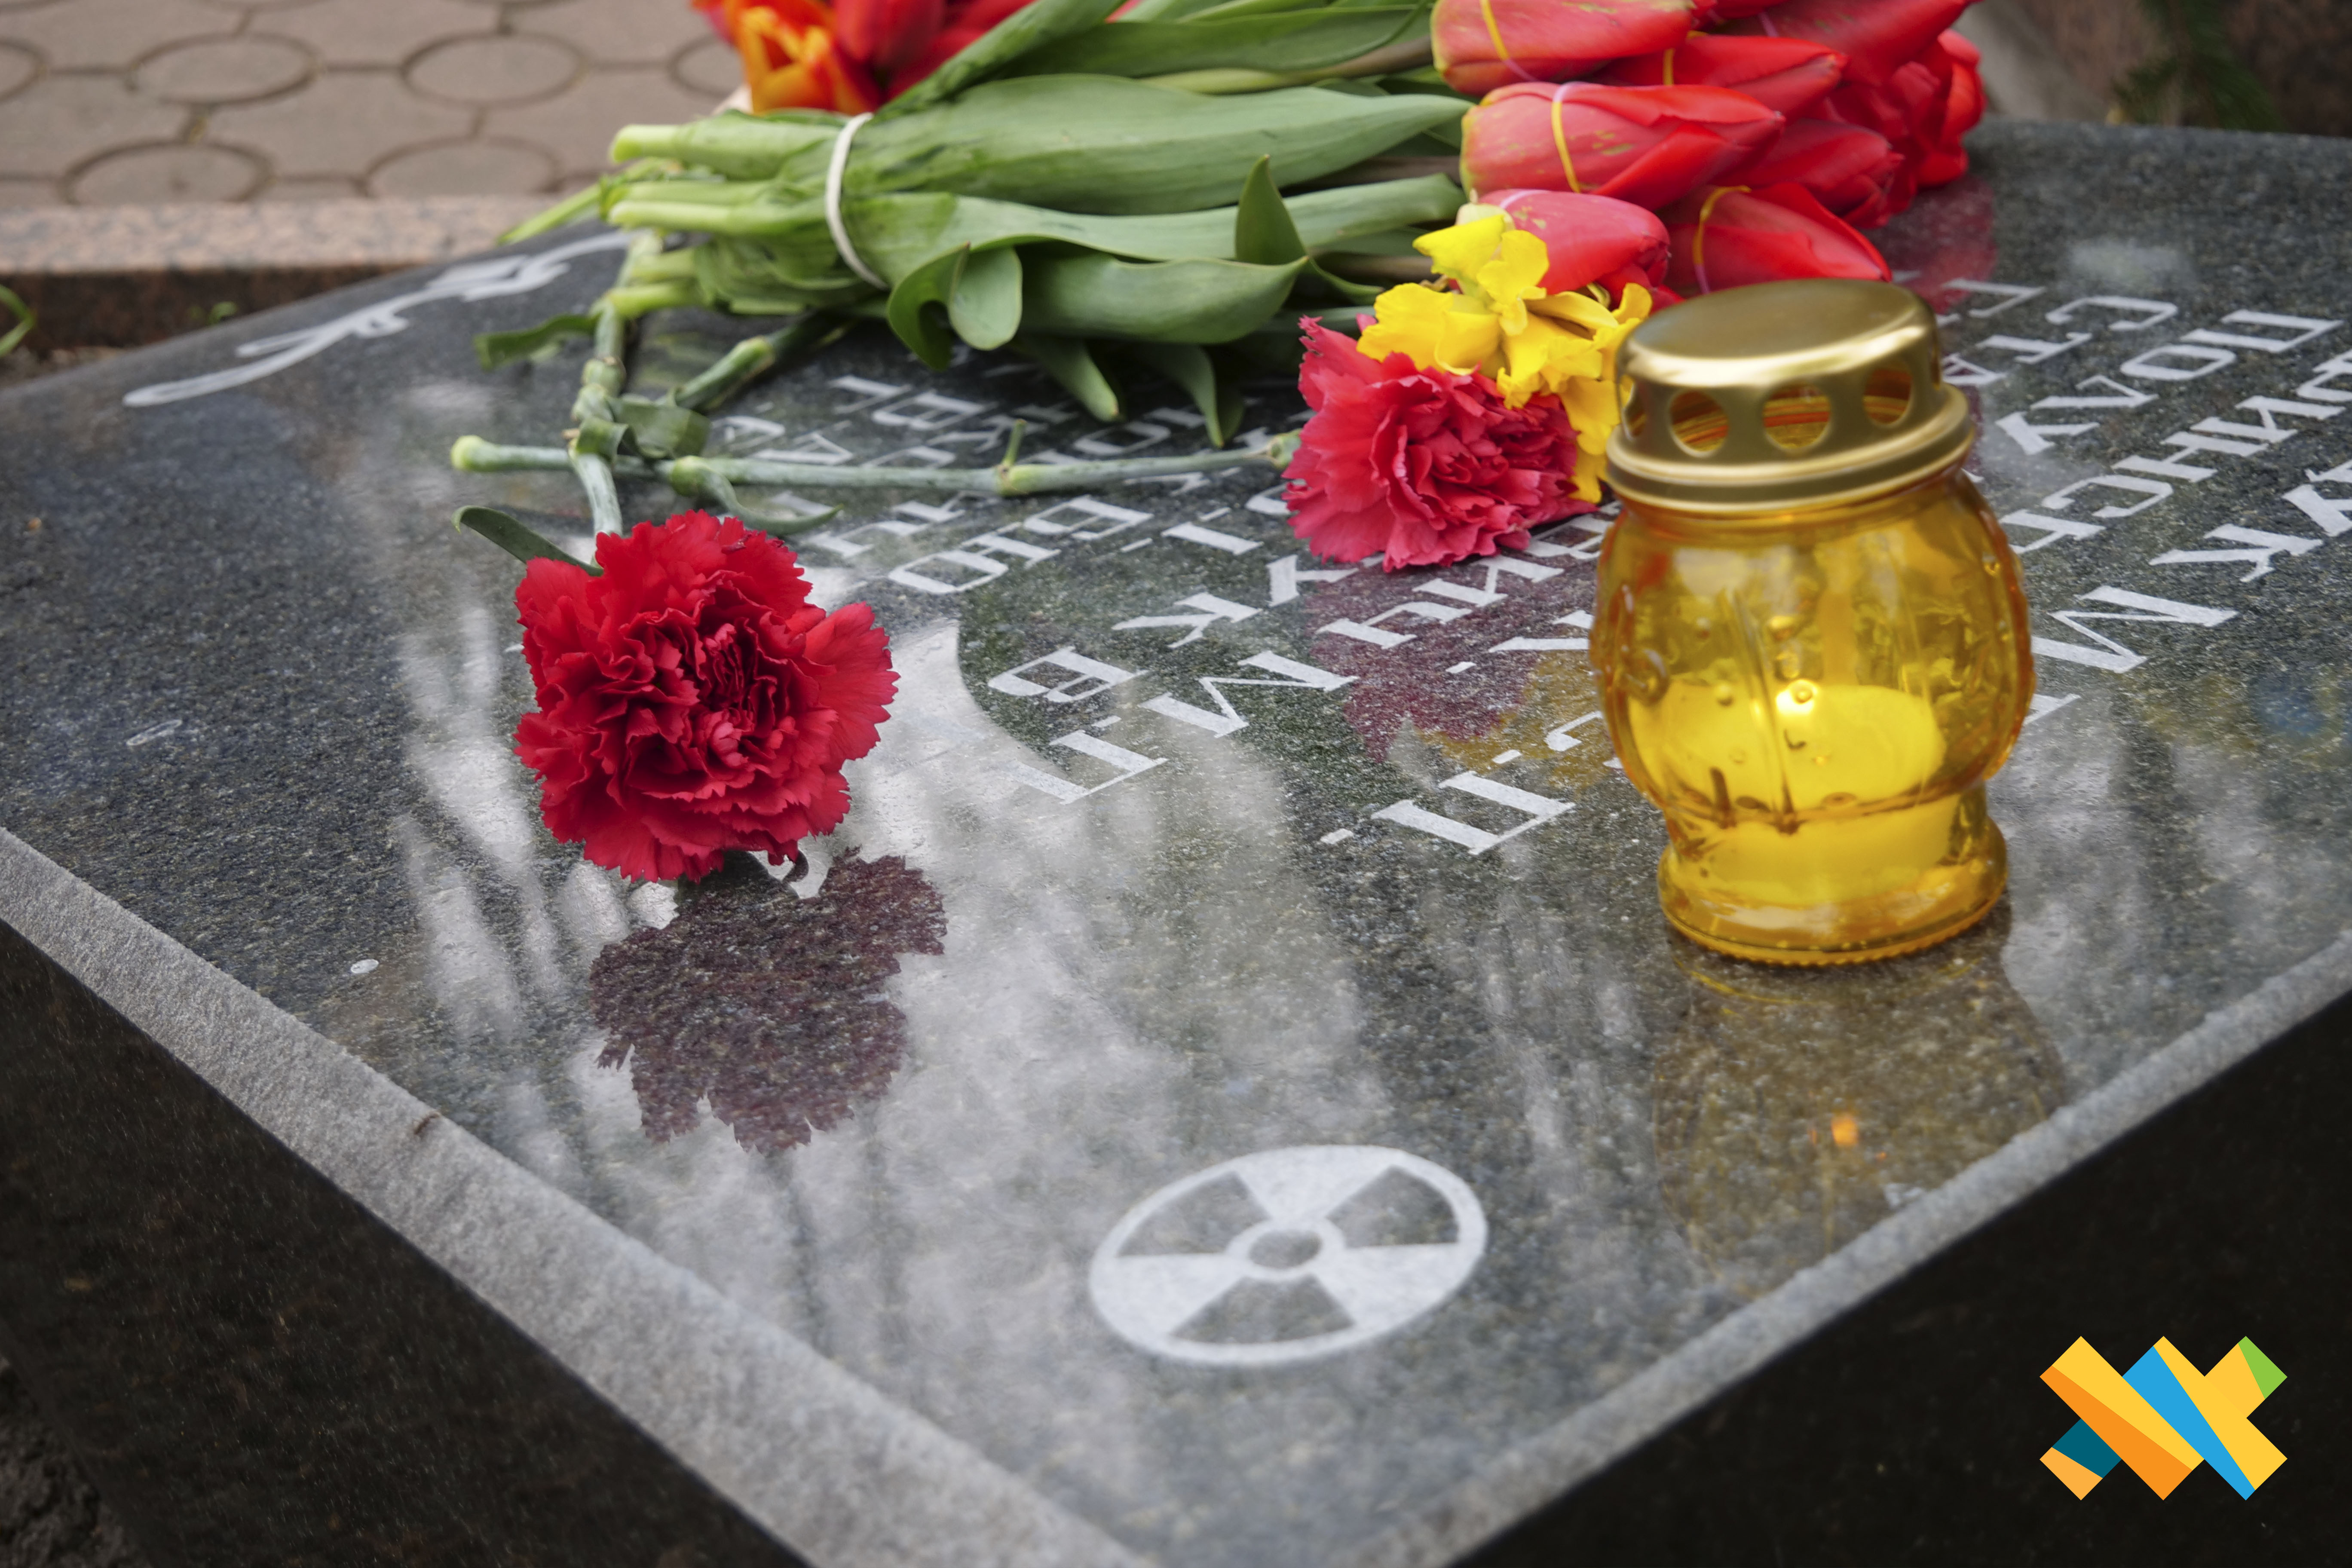 Сьогодні, у 37-му річницю Чорнобильської трагедії, пам’ять загиблих ліквідаторів вшанували покладанням квітів до пам’ятних знаків